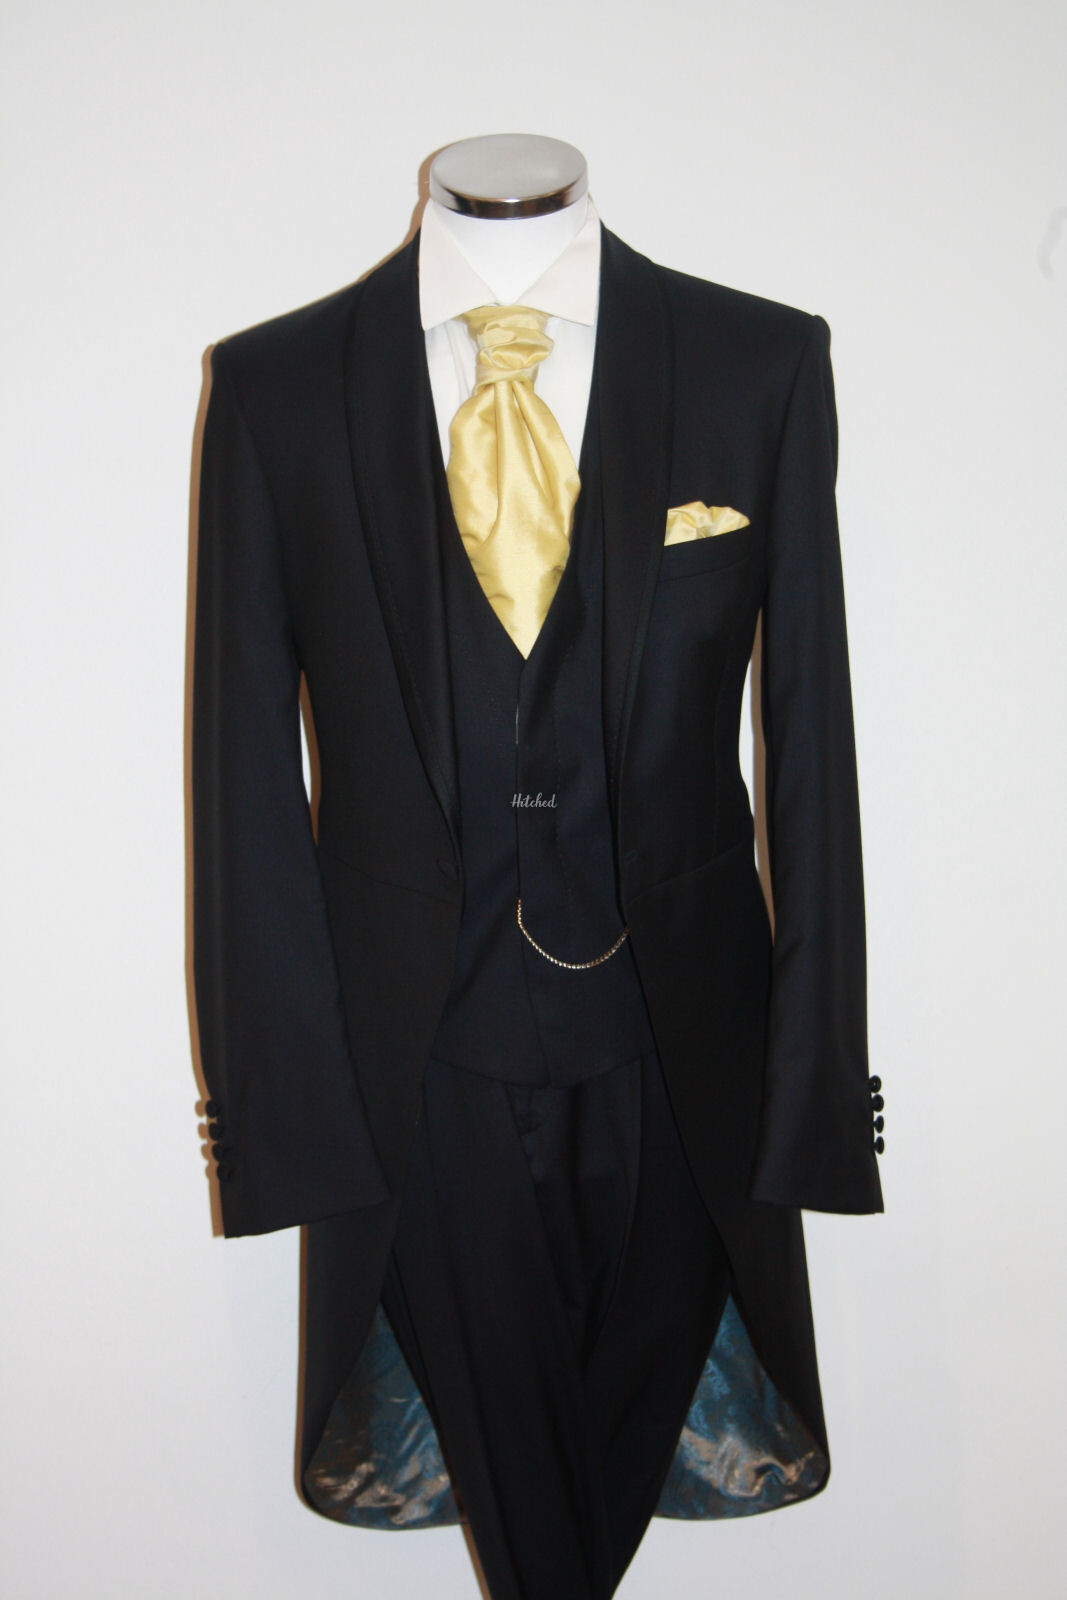 Navy Tails, Suit Waistcoat, Sunshine Cravat Mens Wedding Suit from